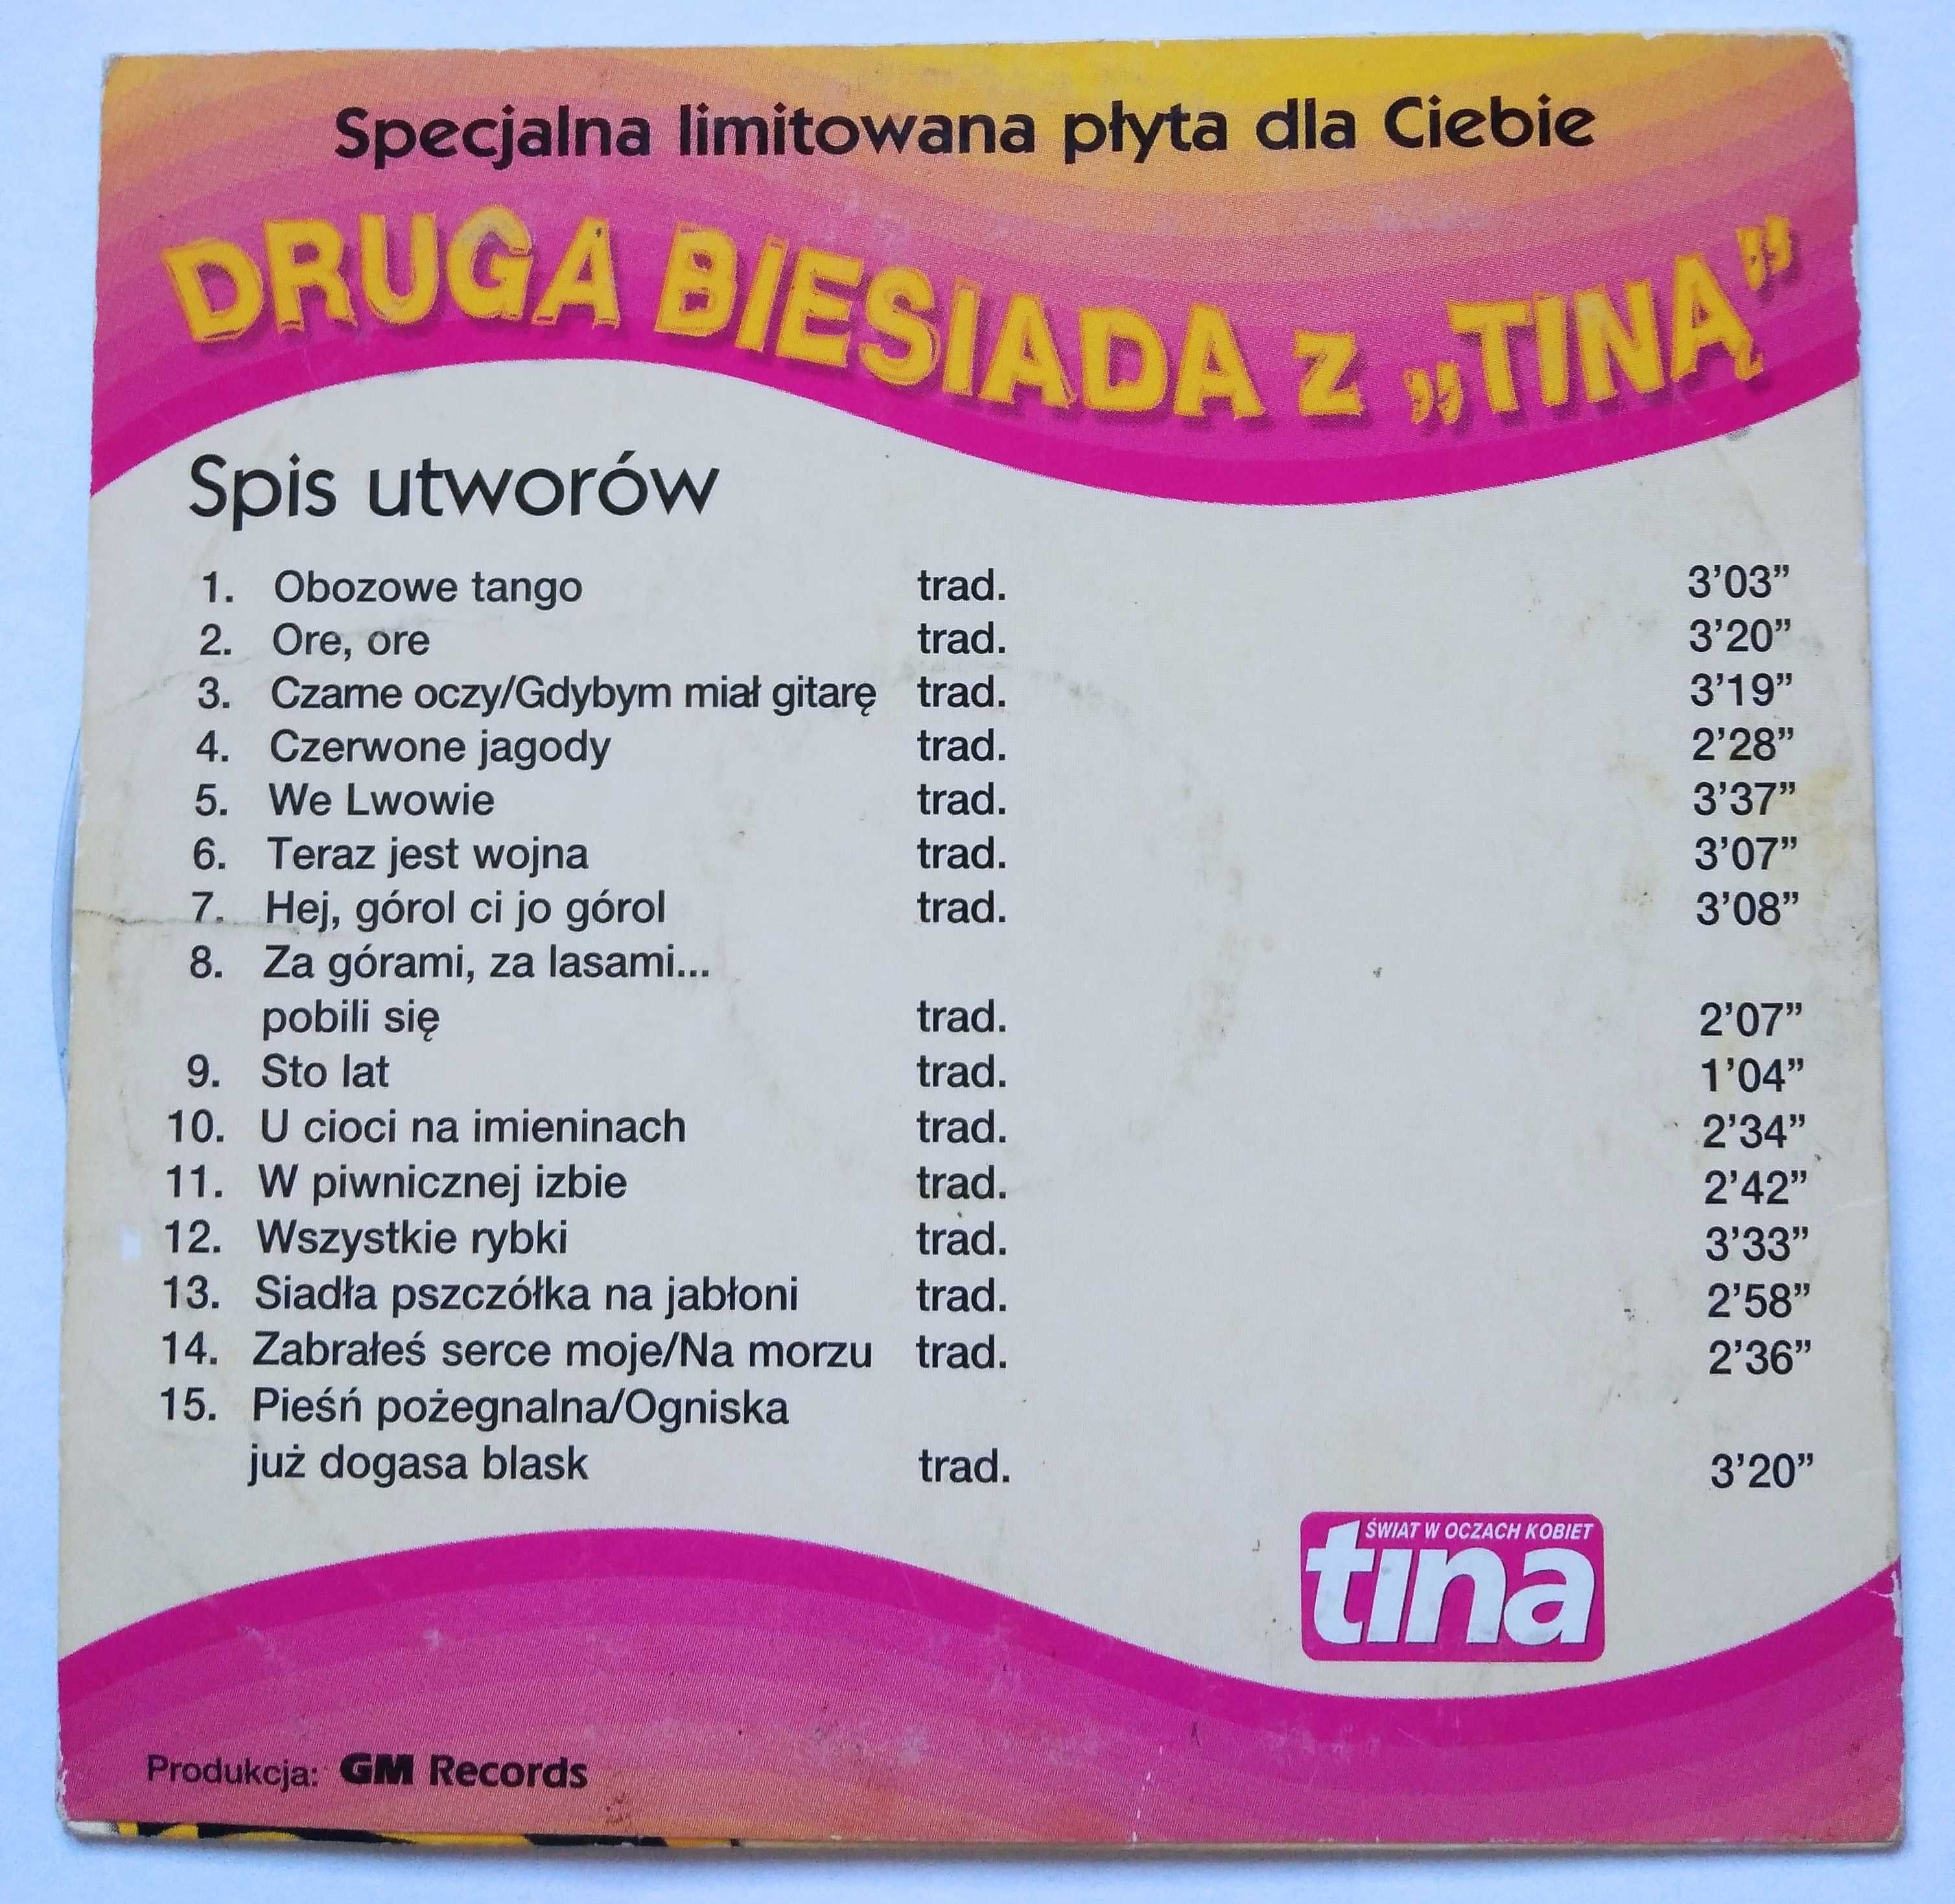 CD "Biesiada z Tiną" - wydawnictwo okolicznościowe